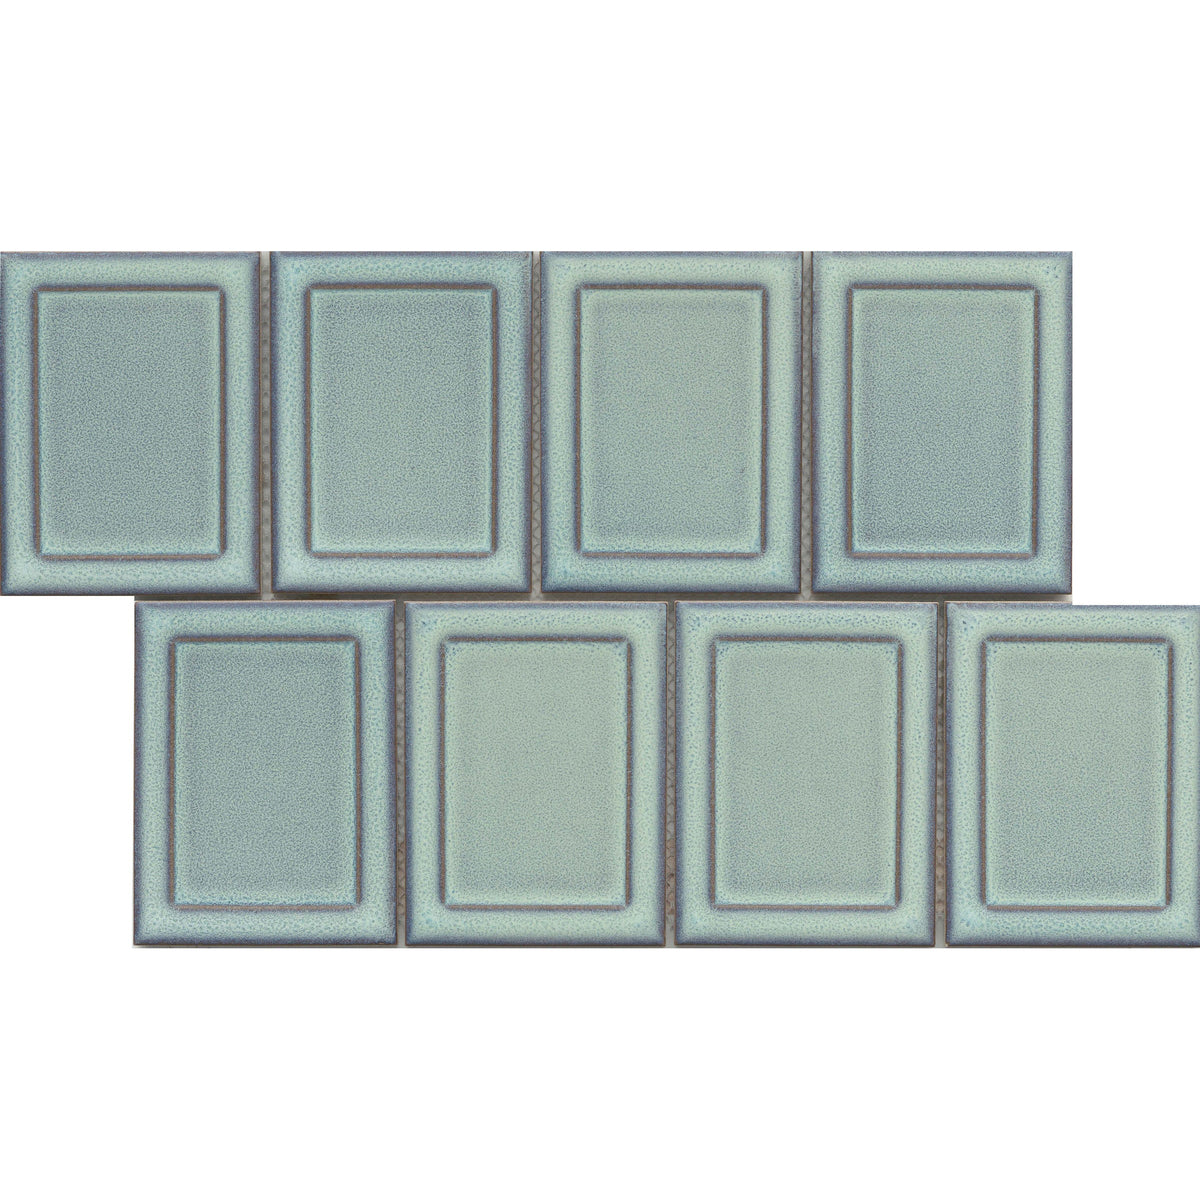 Emser Tile - Cuadro - 9 in. x 14 in. Glazed Porcelain Mosaic - Sky Frame